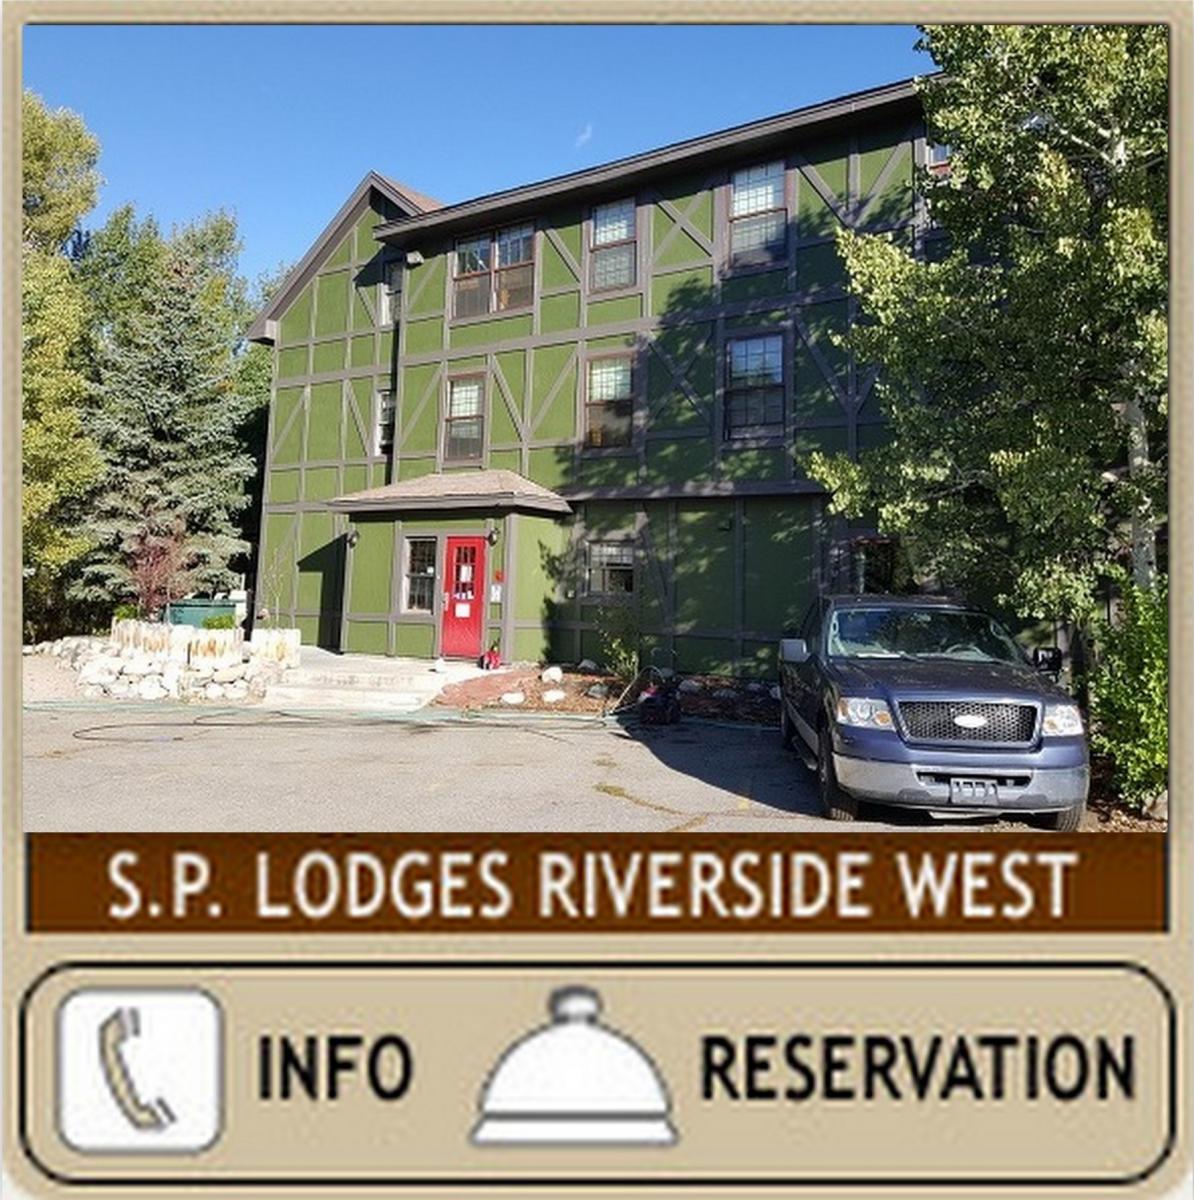 Summit Peaks Lodges Riverside West